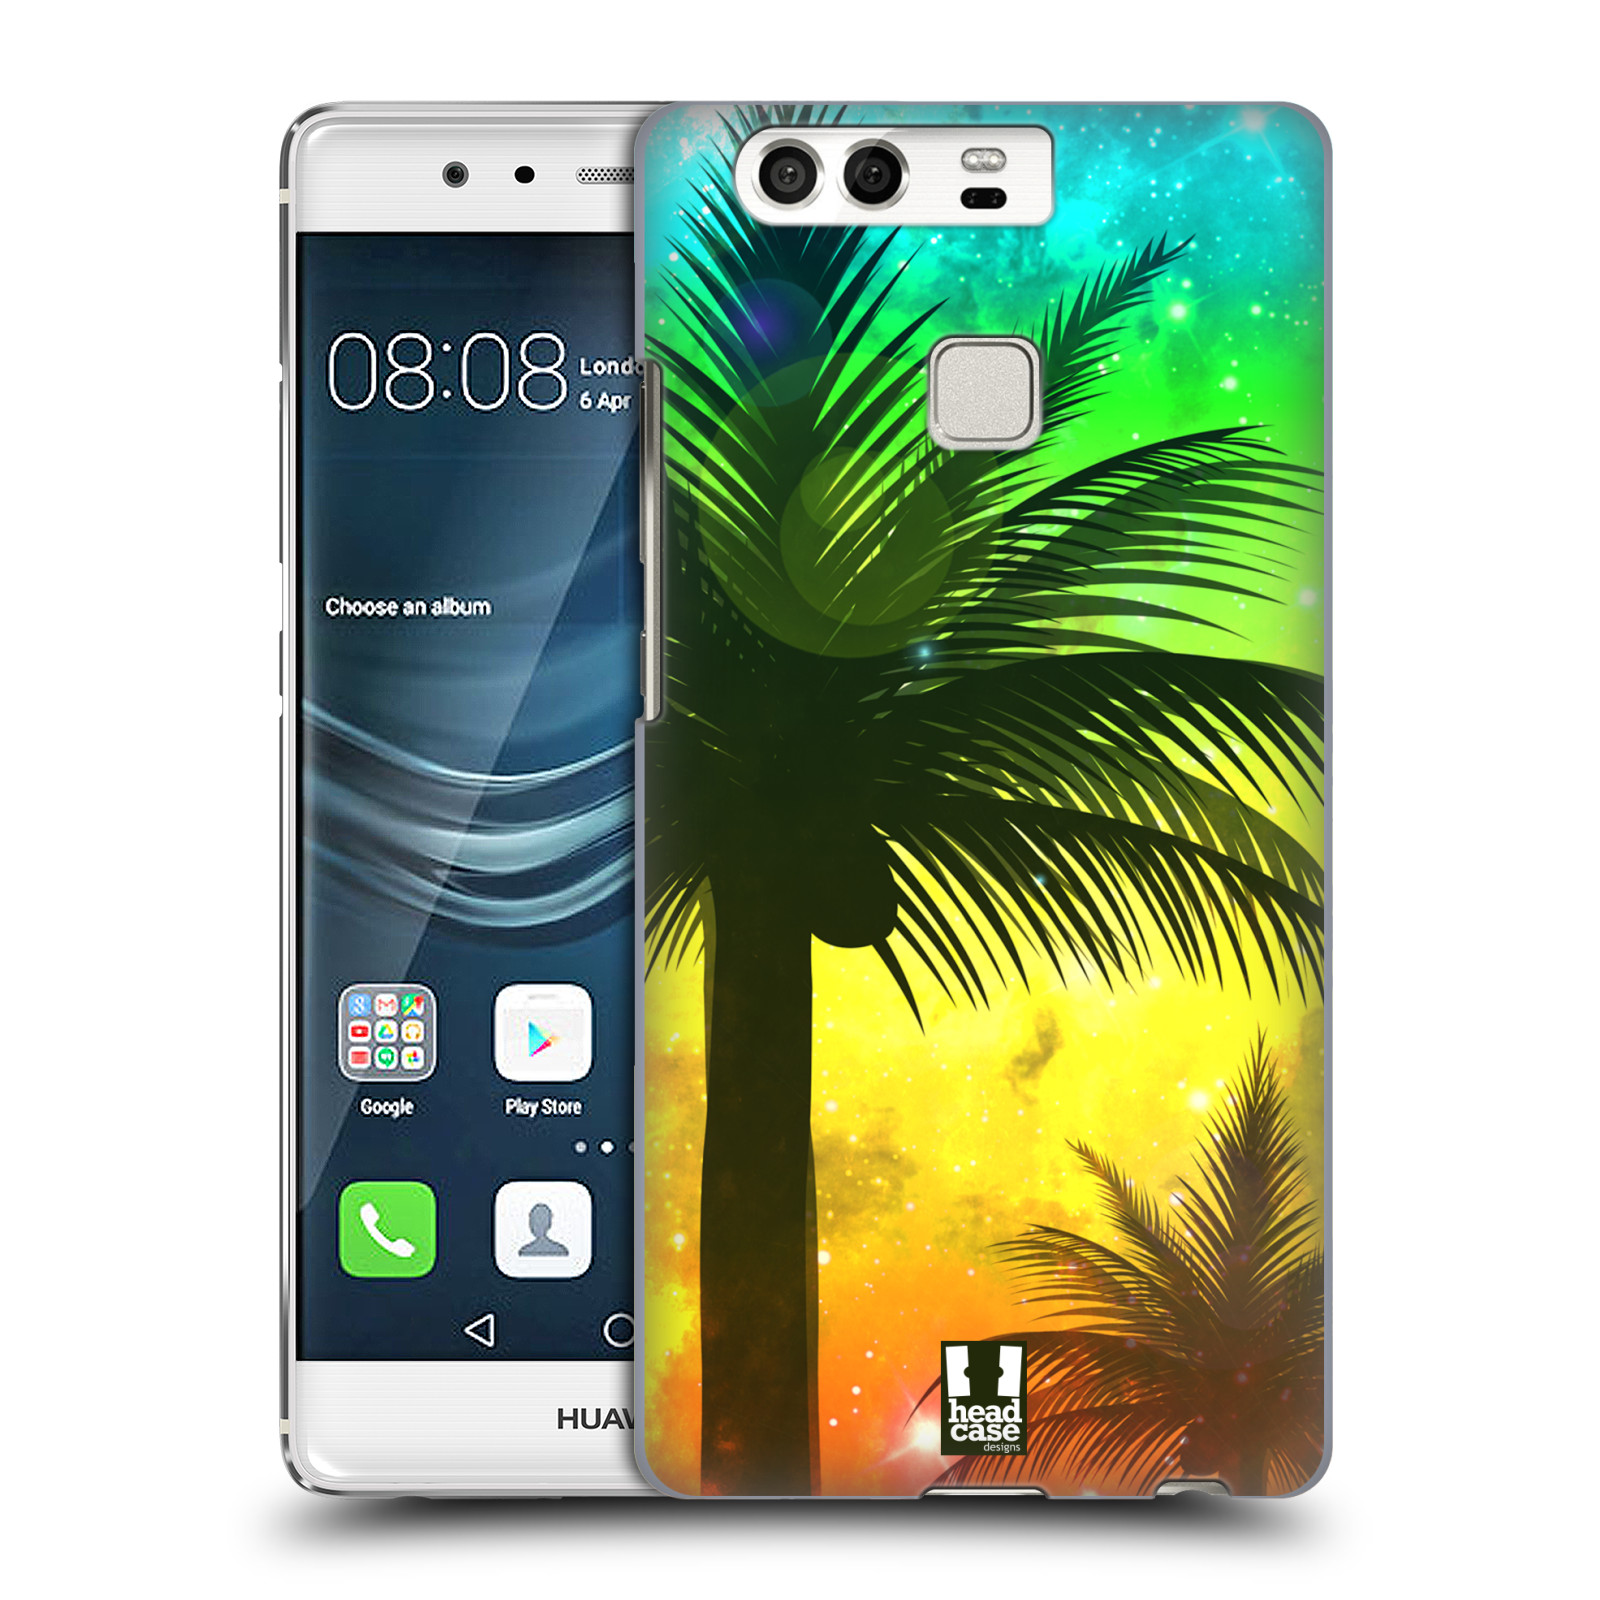 HEAD CASE plastový obal na mobil Huawei P9 / P9 DUAL SIM vzor Kreslený motiv silueta moře a palmy ZELENÁ A ORANŽOVÁ